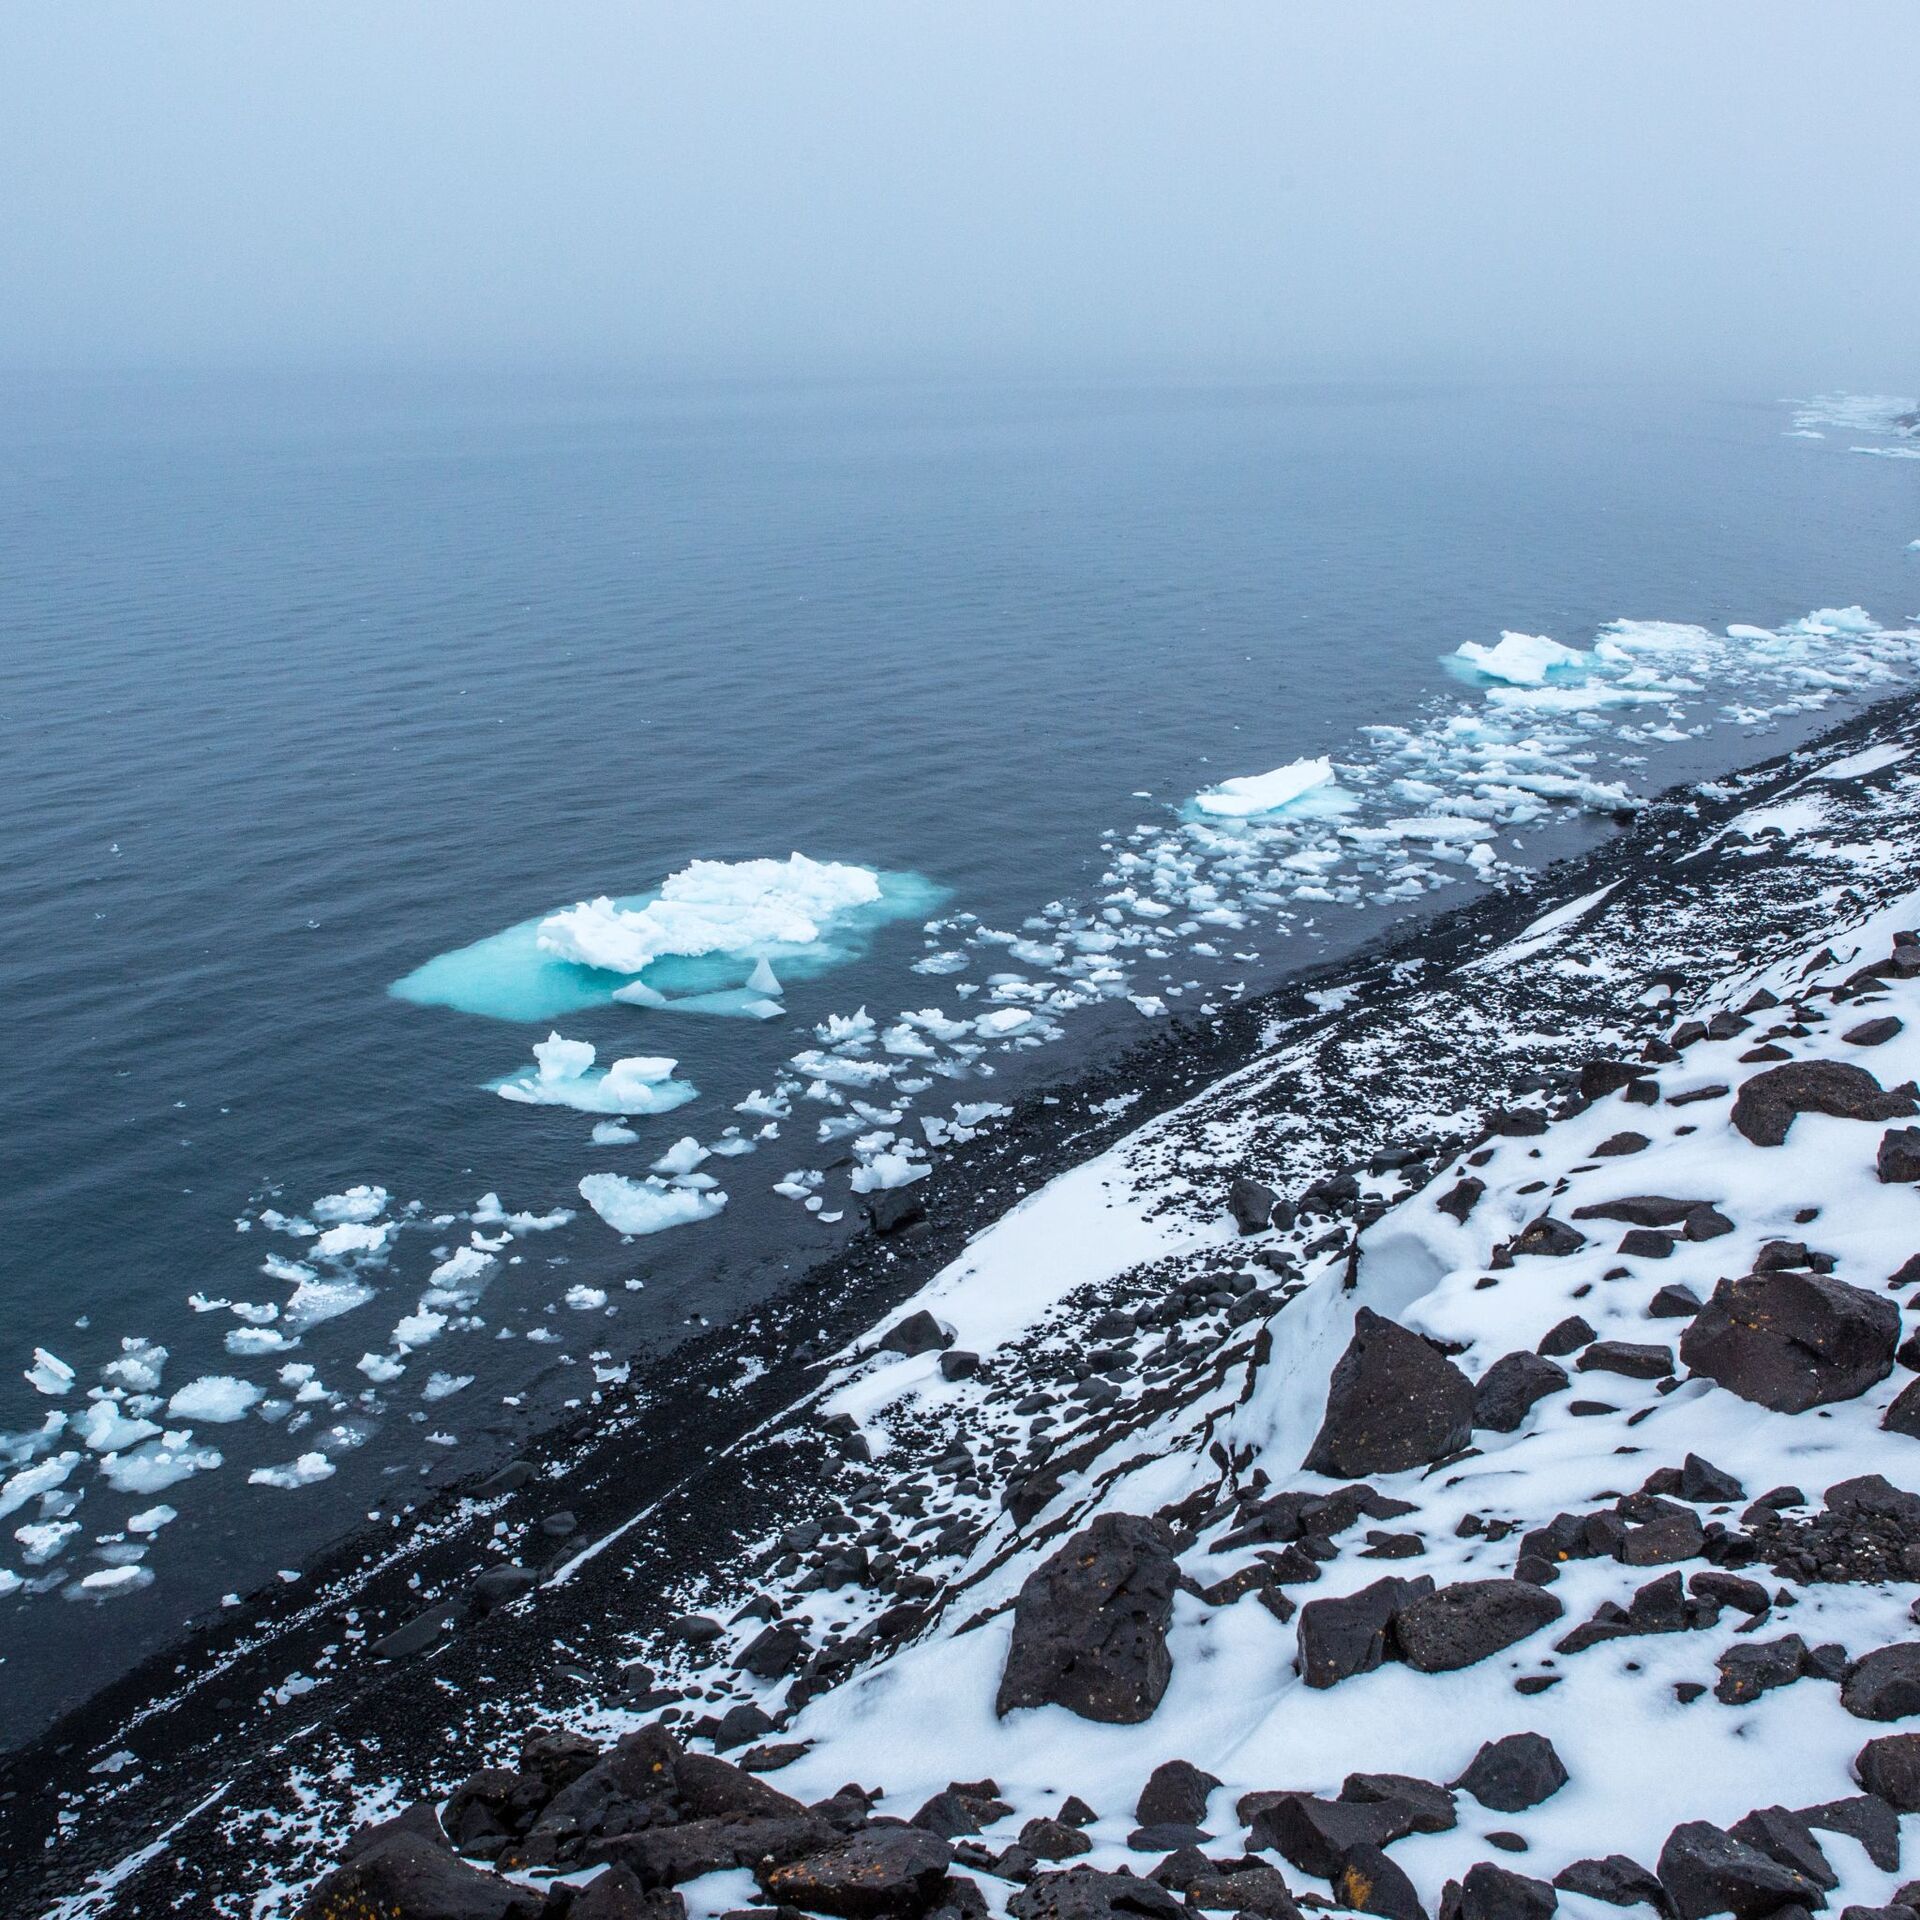 Экспедиция открытый океан архипелаги арктики 2019